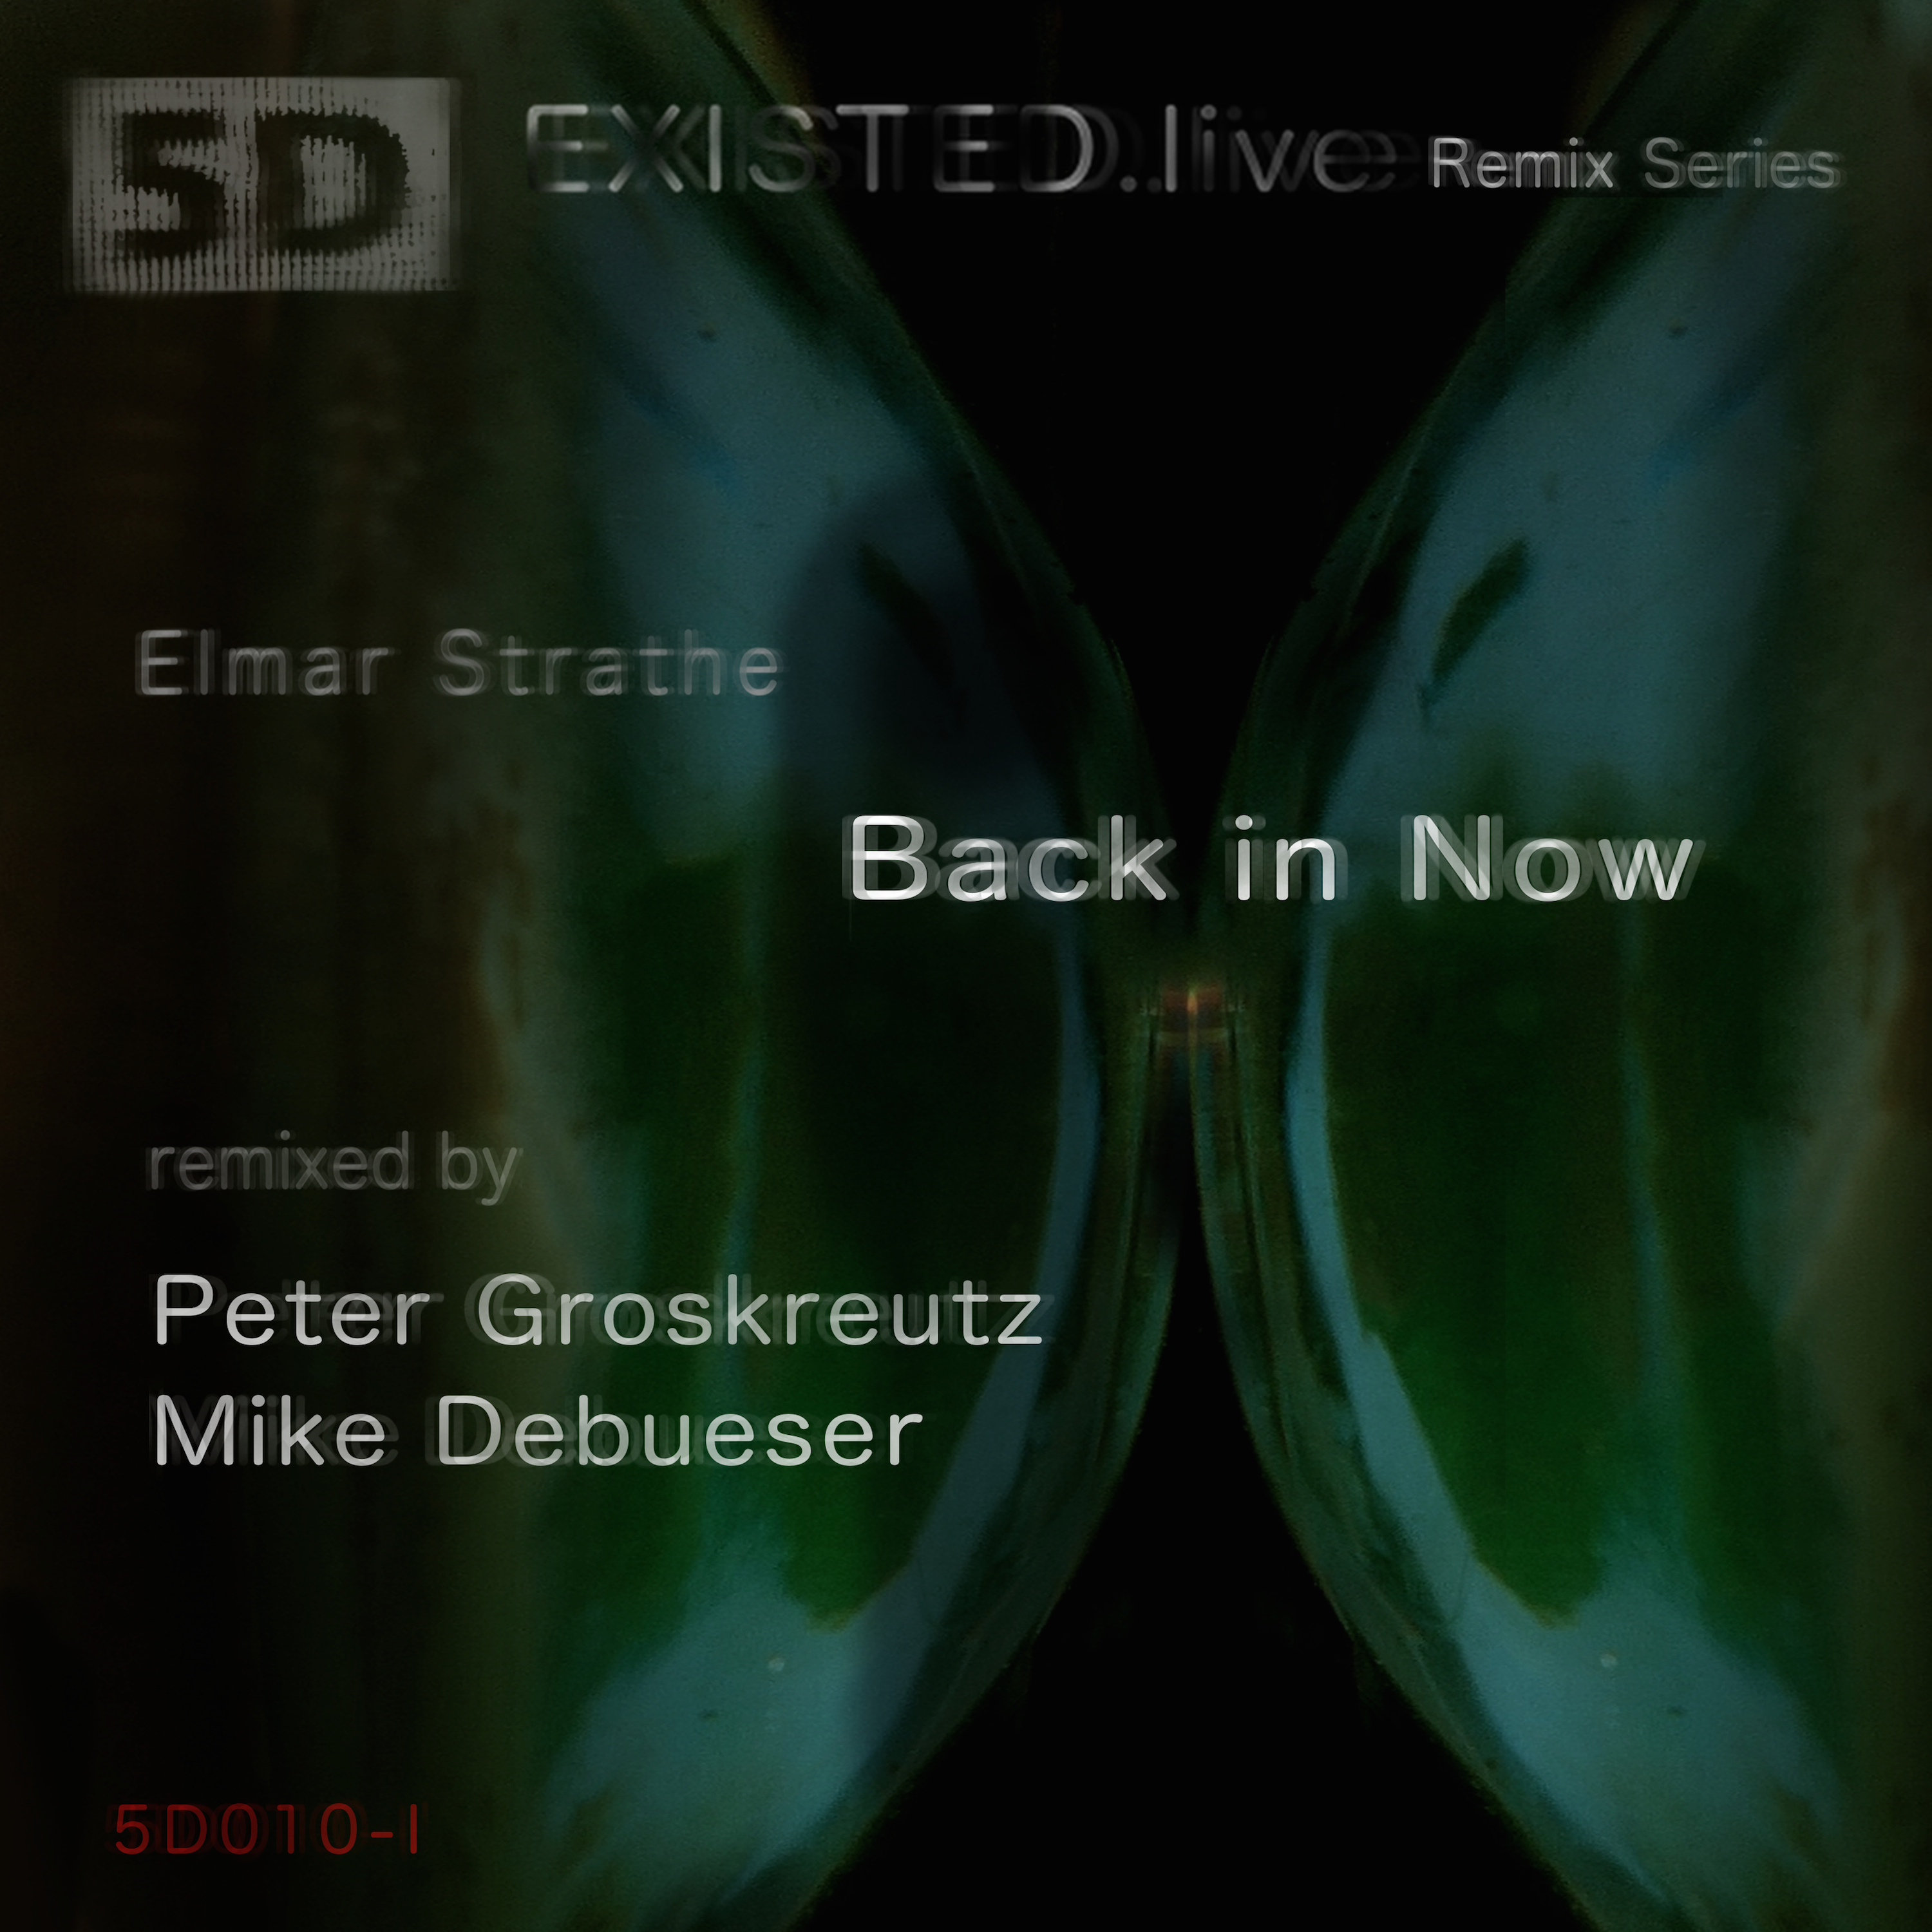 Back in Now (Peter Groskreutz Remix)